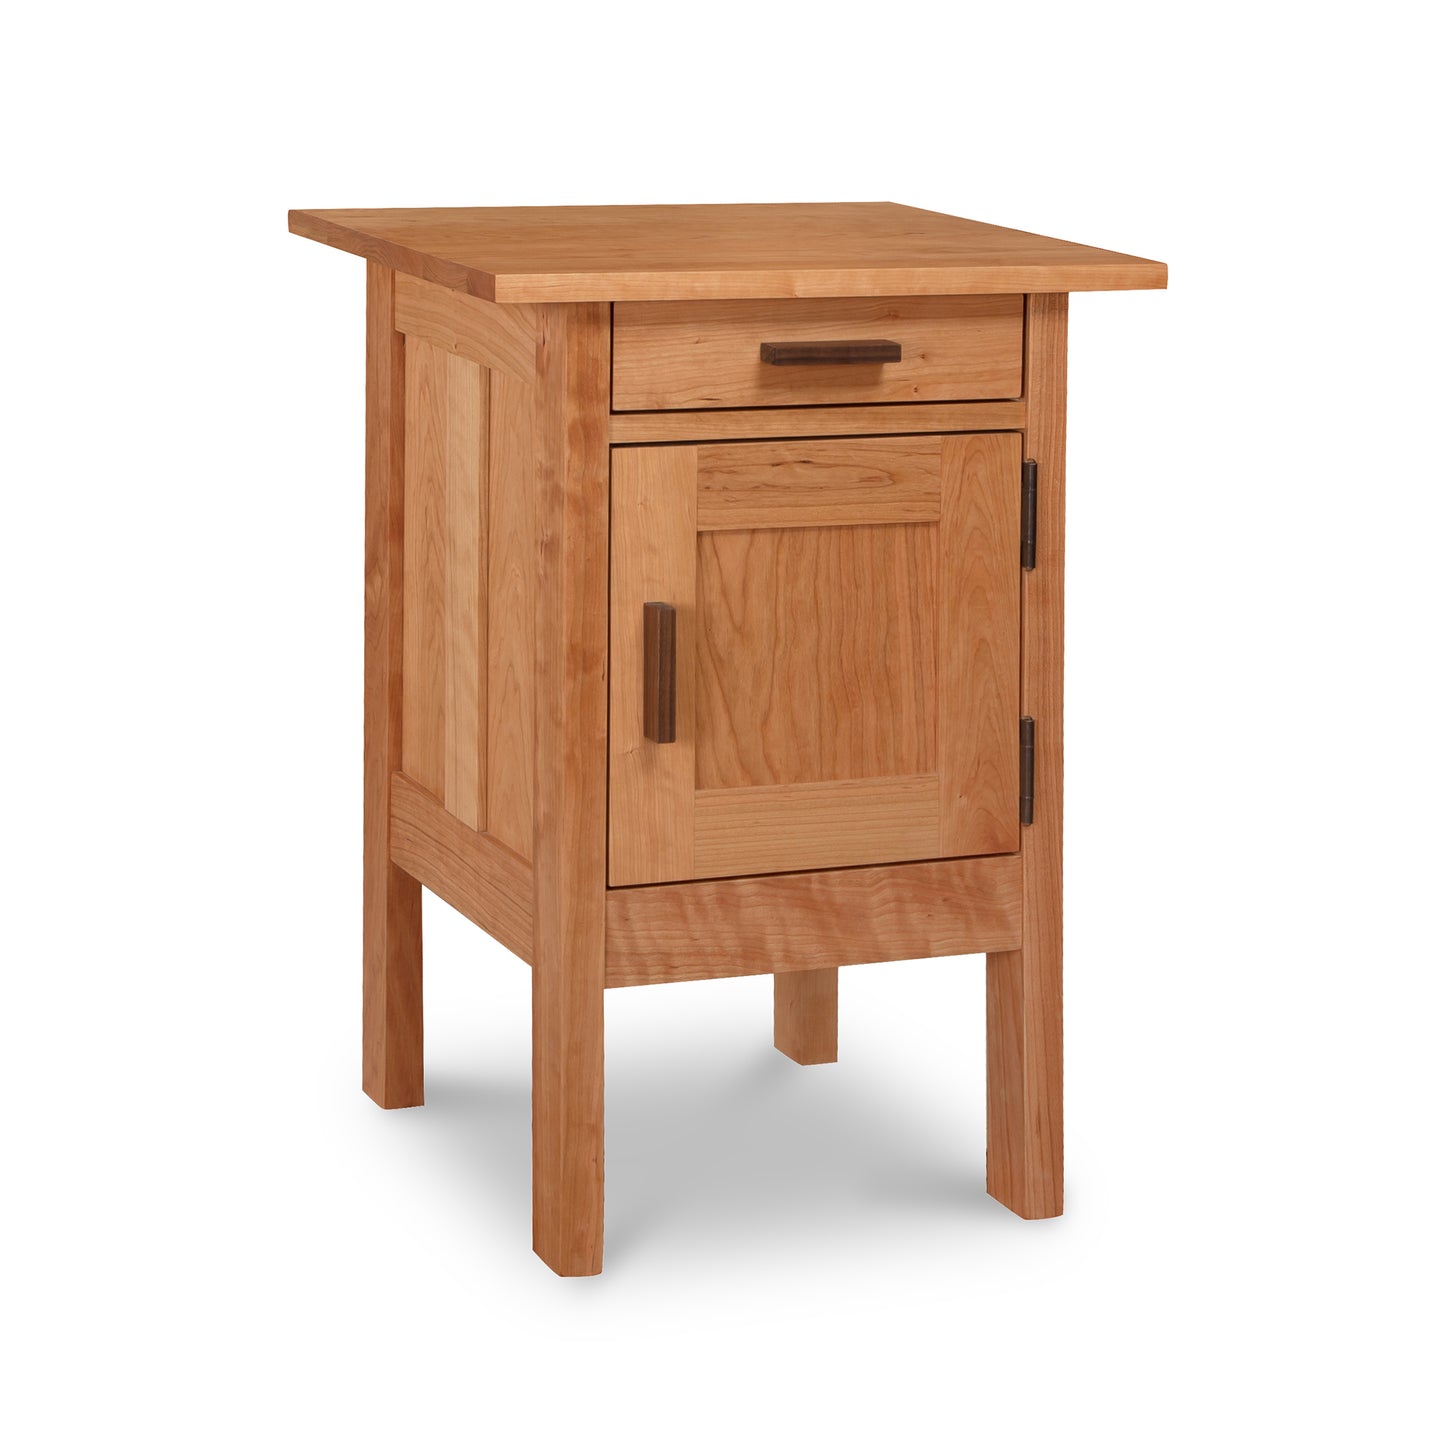 A Vermont Furniture Designs Modern Craftsman 1-Drawer Nightstand with Door.